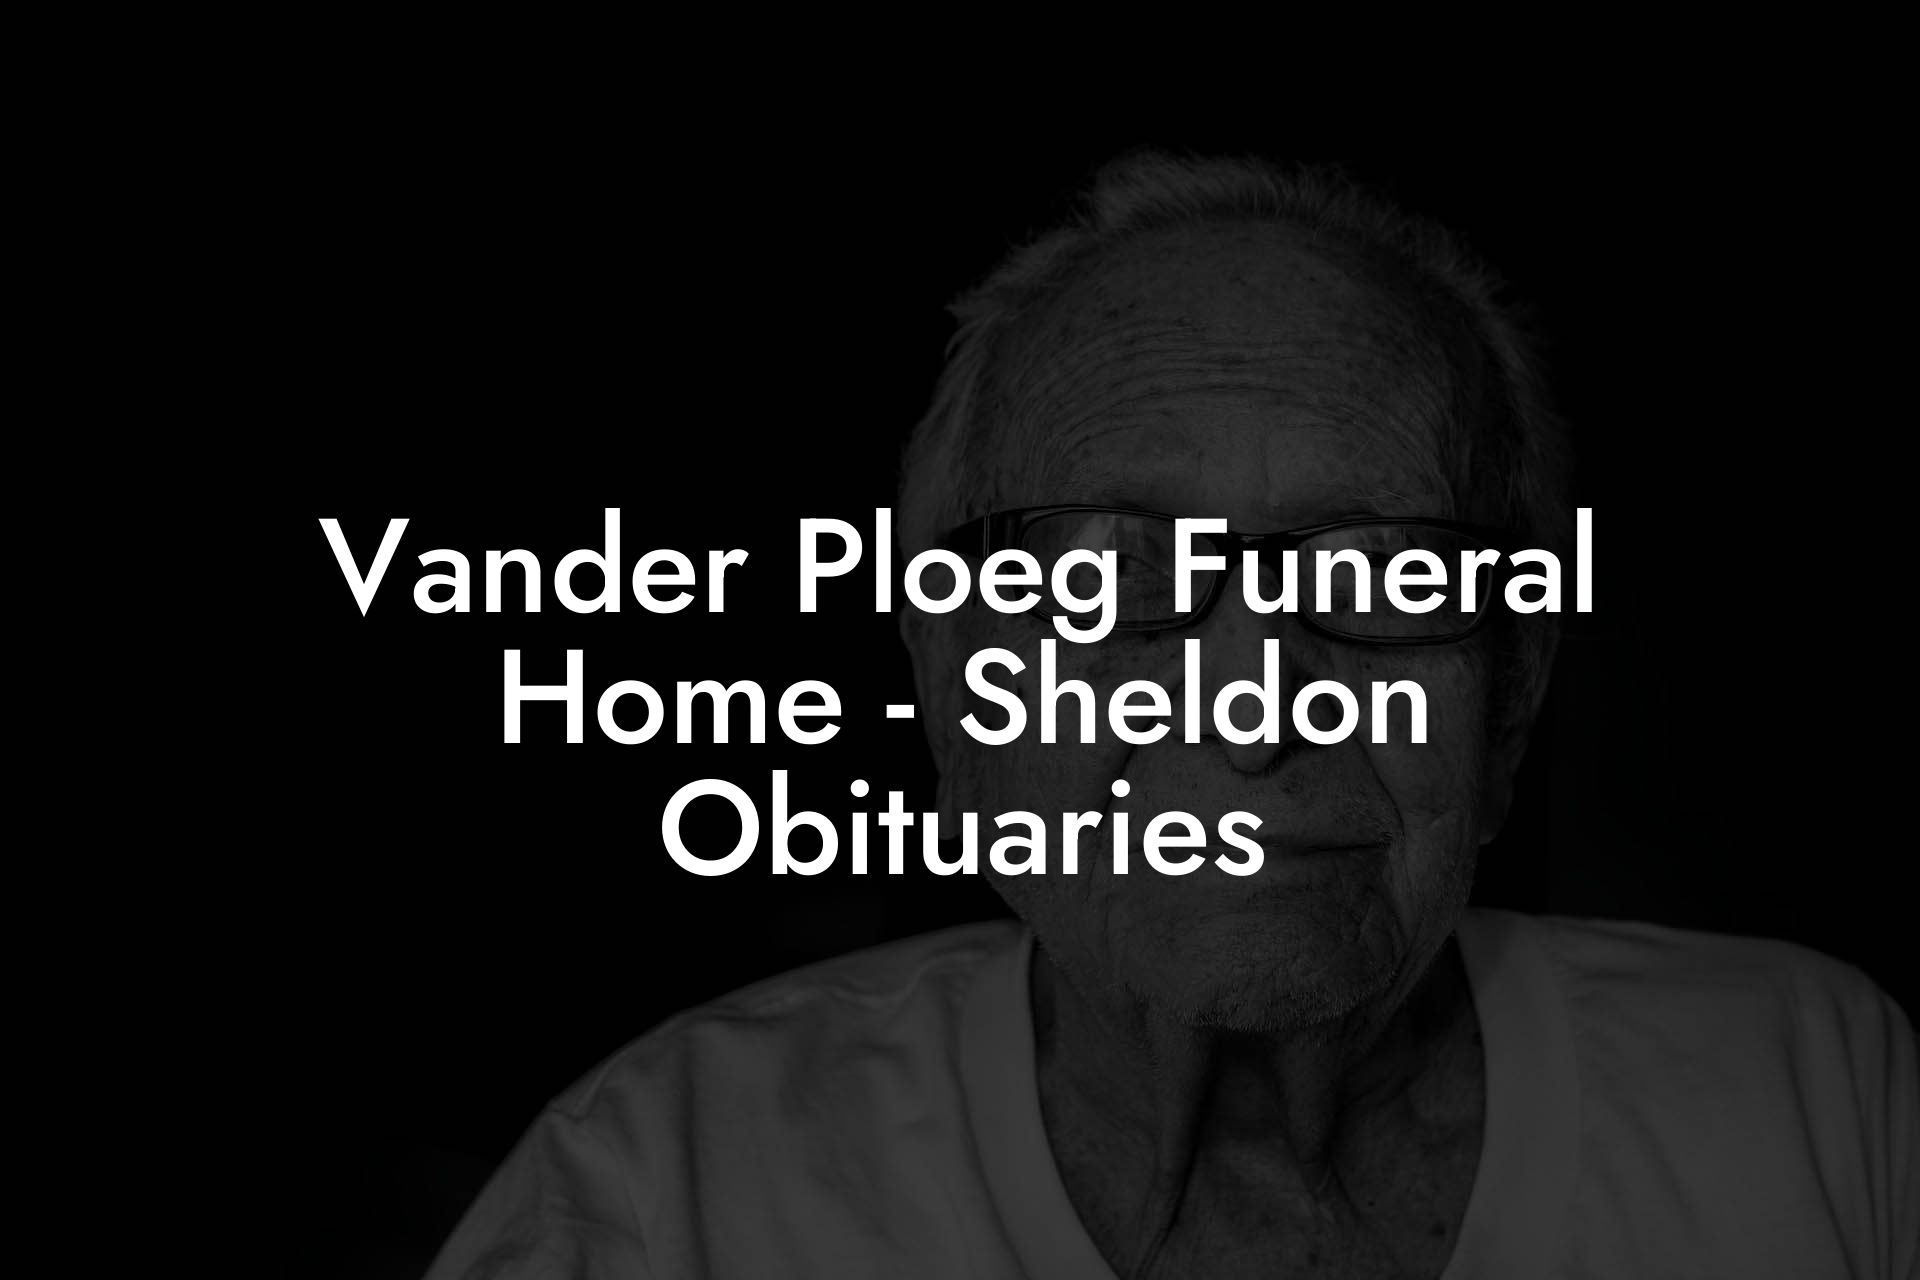 Vander Ploeg Funeral Home - Sheldon Obituaries